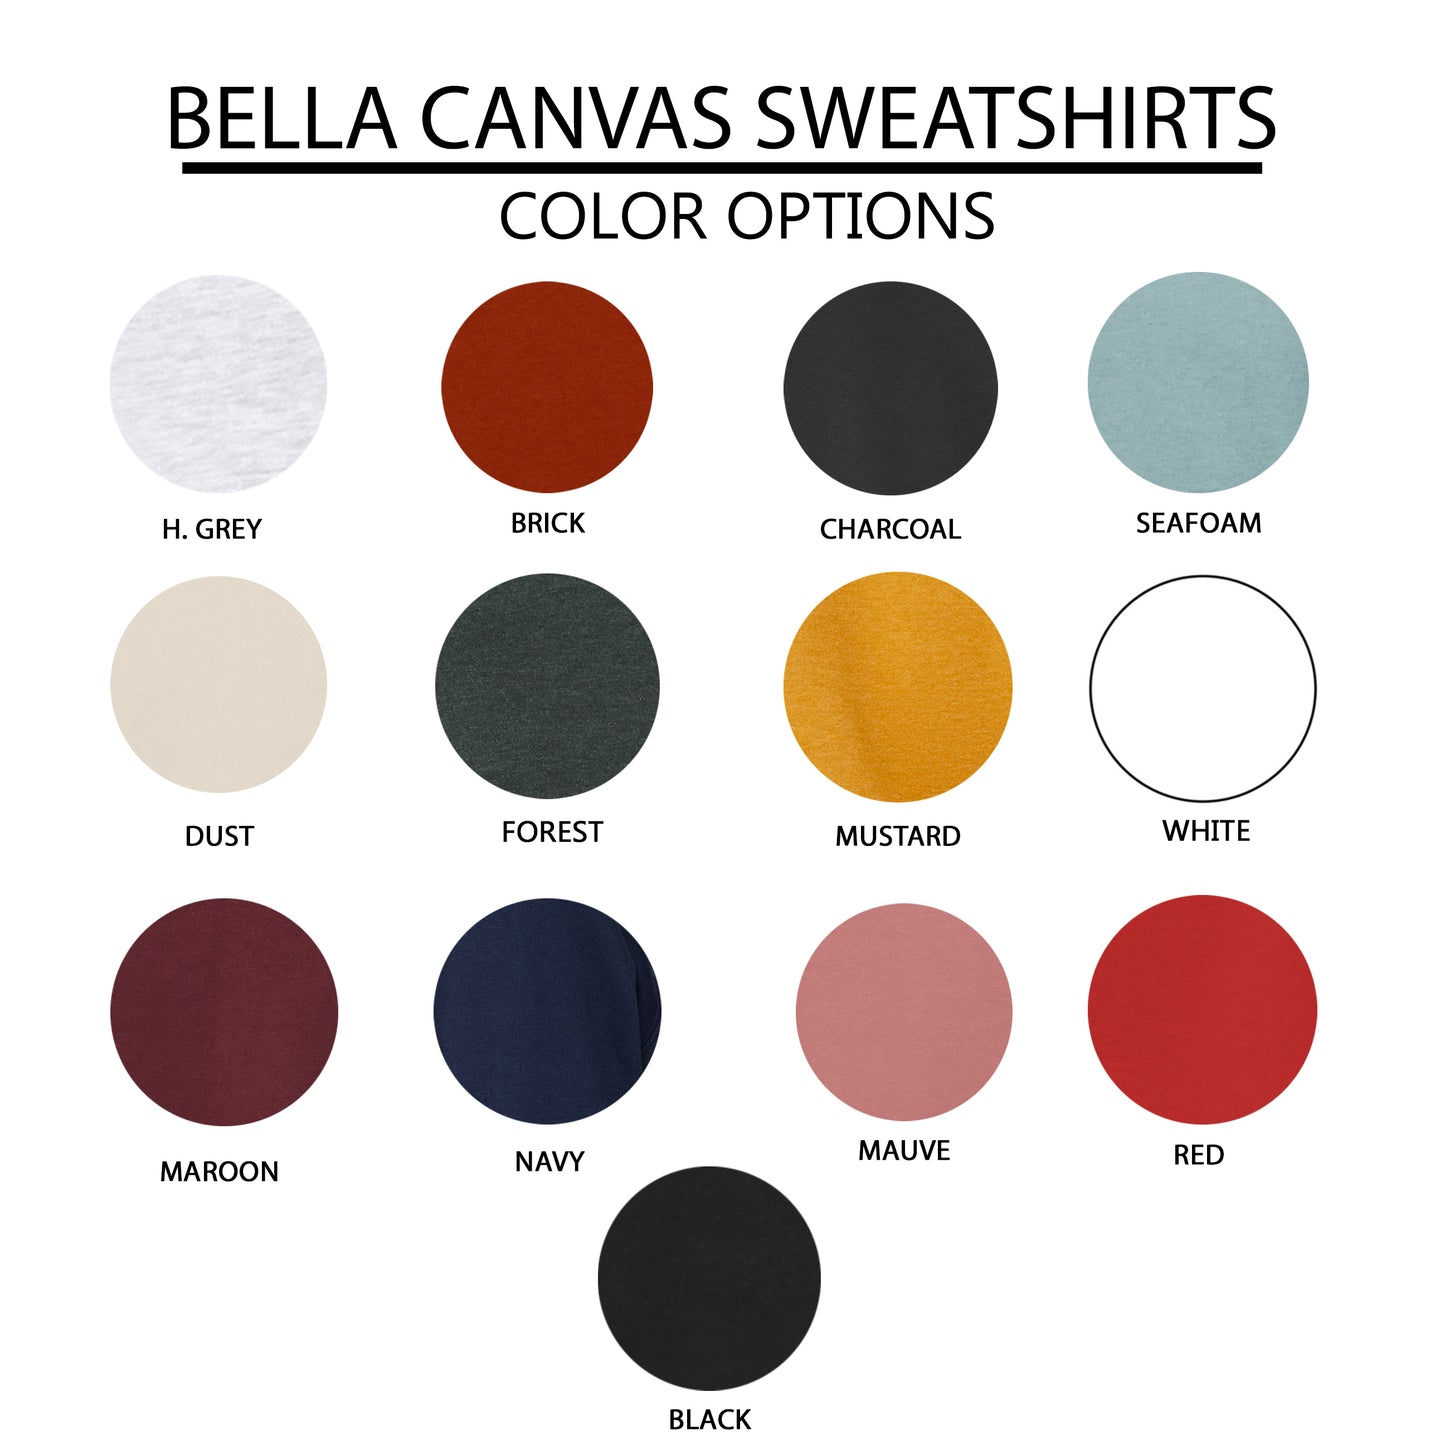 Grace Upon Grace Cursive | Bella Canvas Premium Sweatshirt